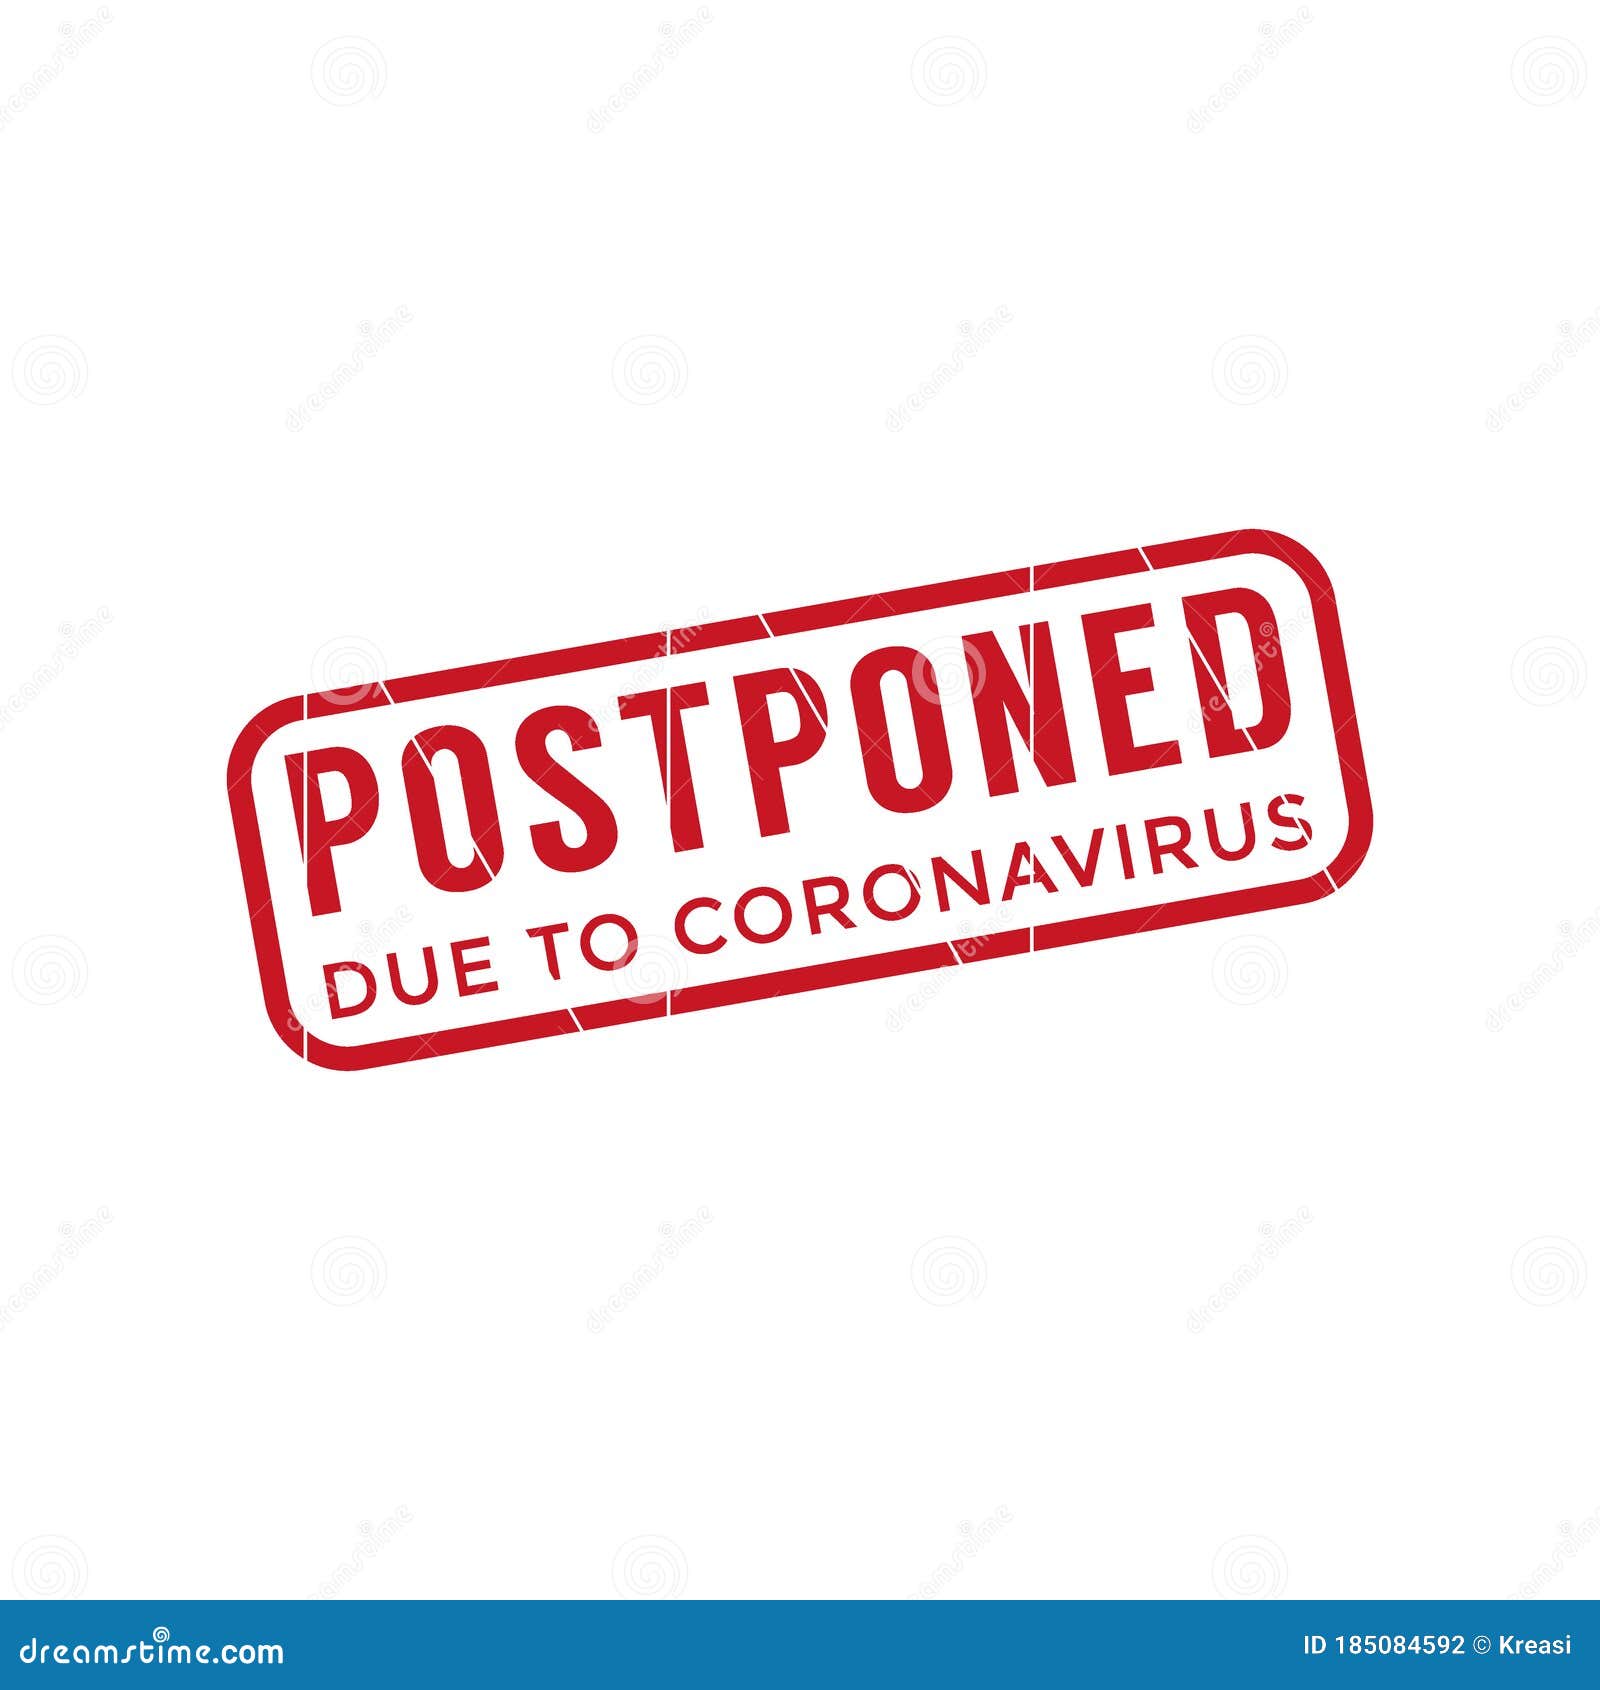 postponed due to coronavirus stamp